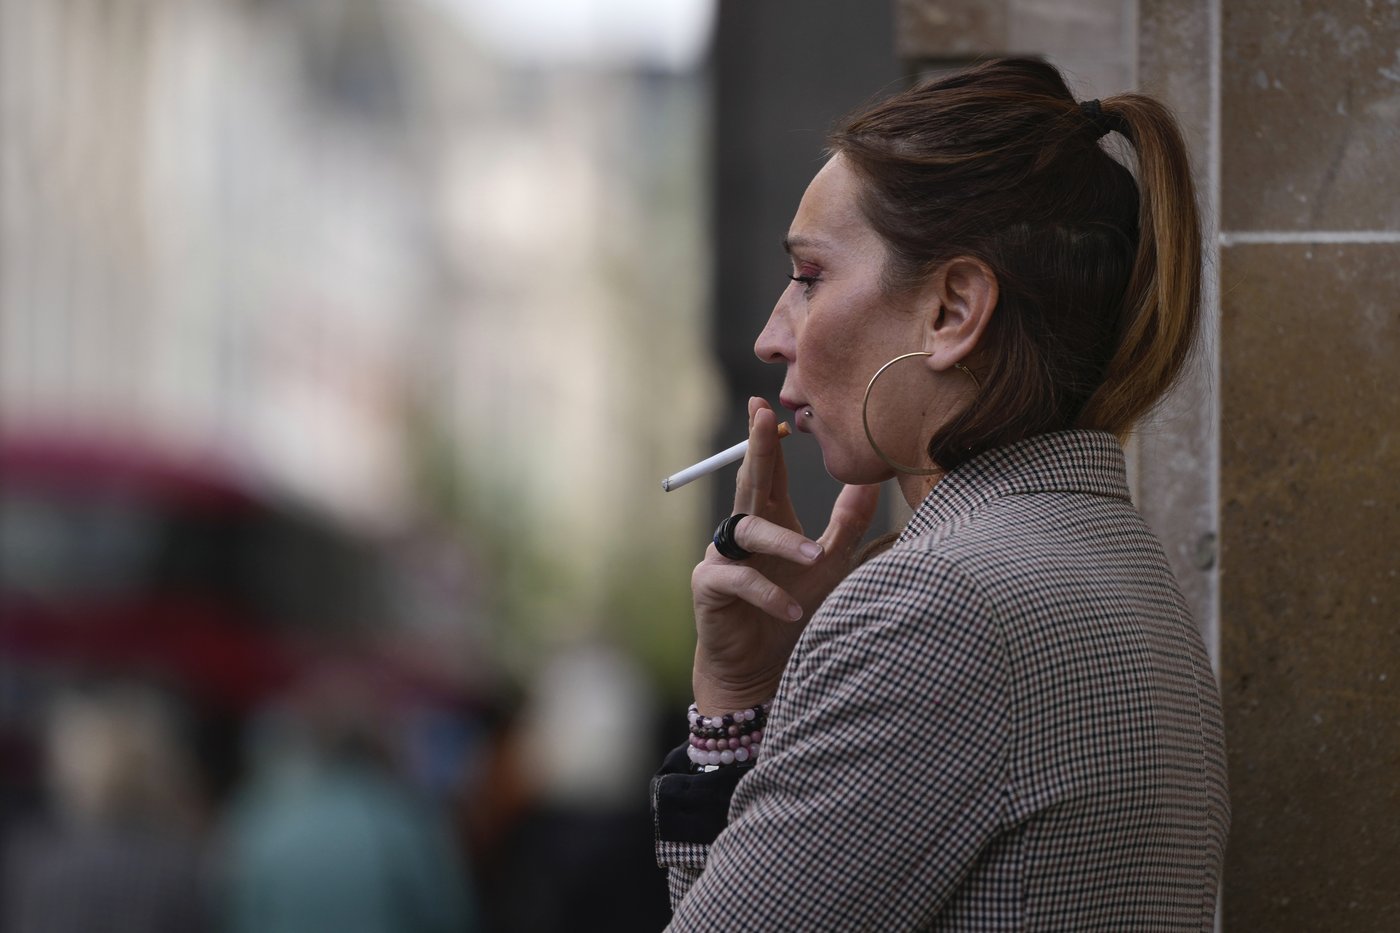 Les fumeurs de cigarettes sont encore stigmatisés par des mythes qui persistent